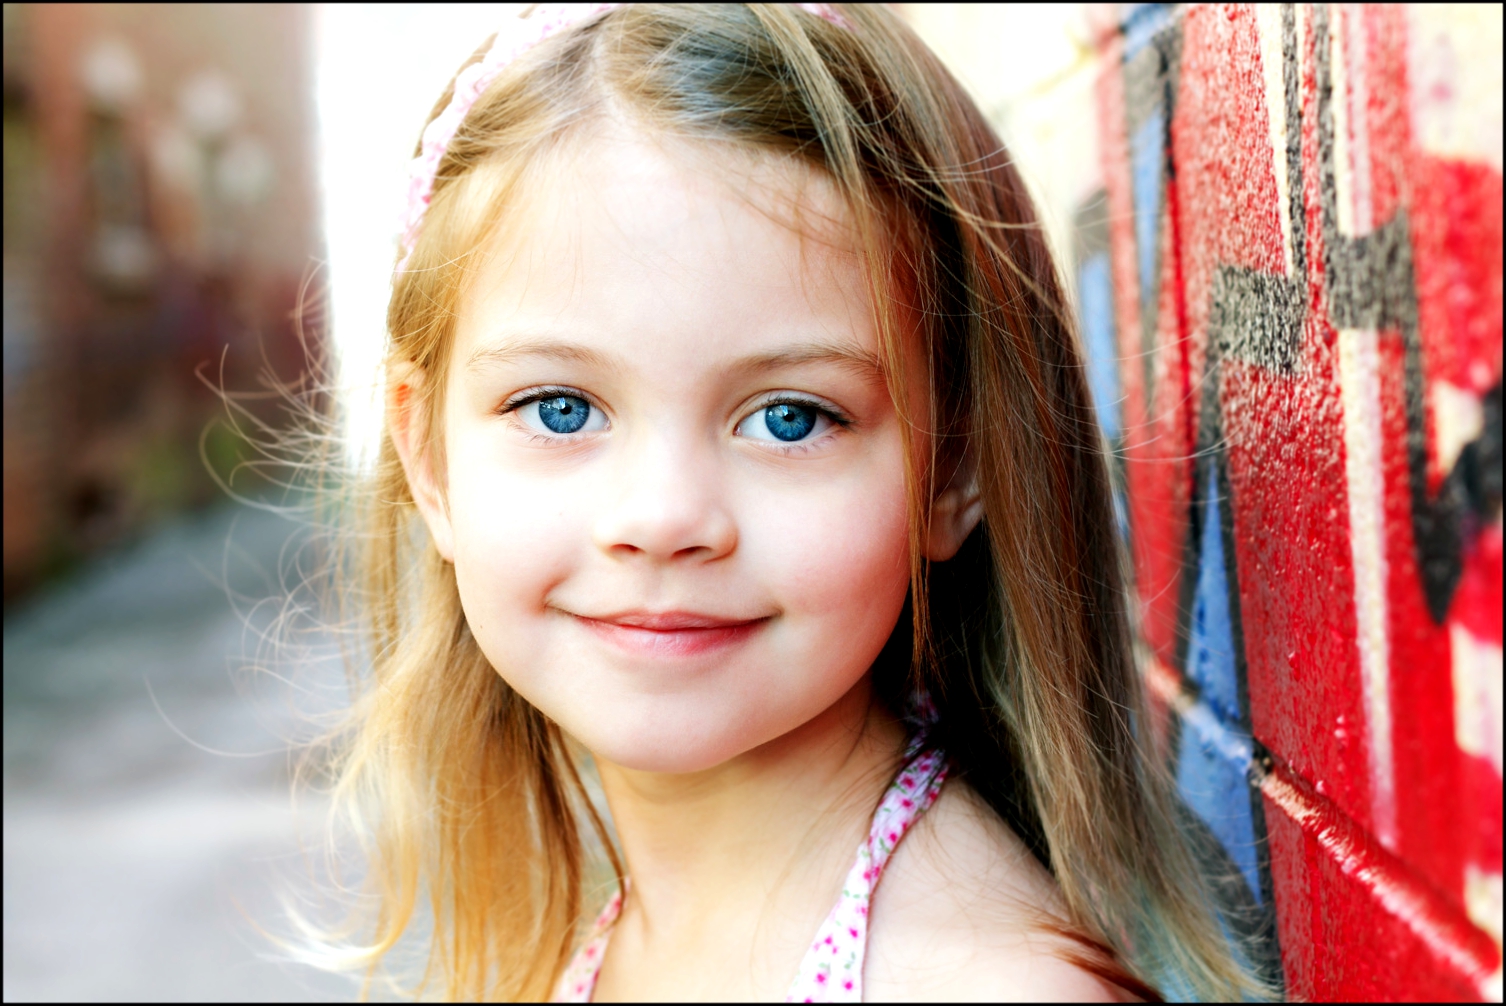 Маленькая девочка в городских условиях улыбки на камеру.  Фото автора Steph...